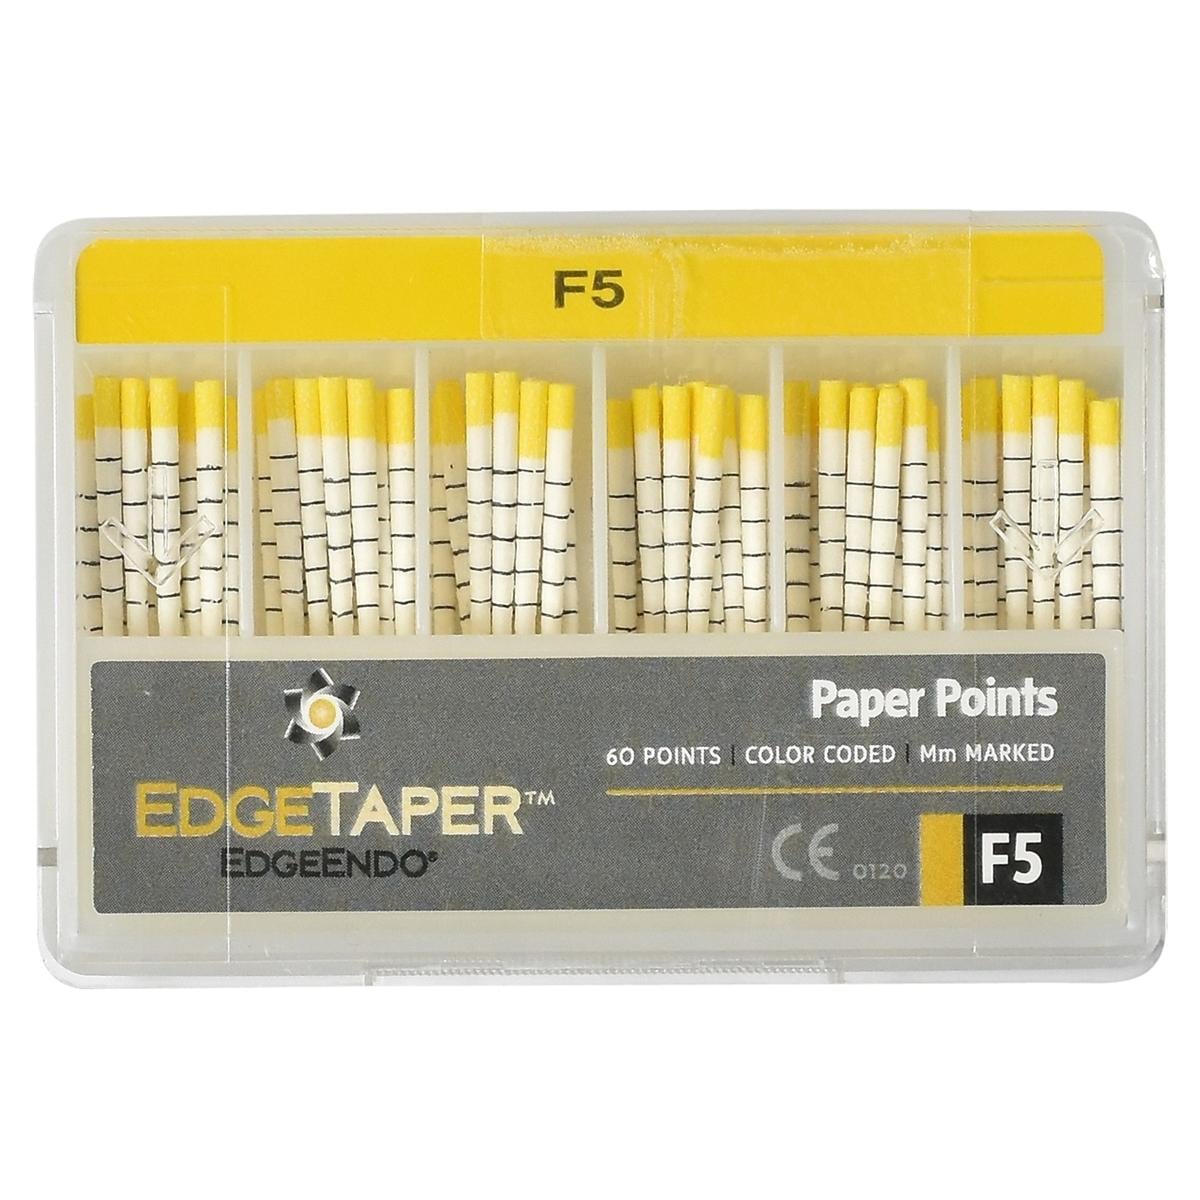 EdgeTaper Papierspitzen - Standardpackung - Größe F5, Packung 60 Stück